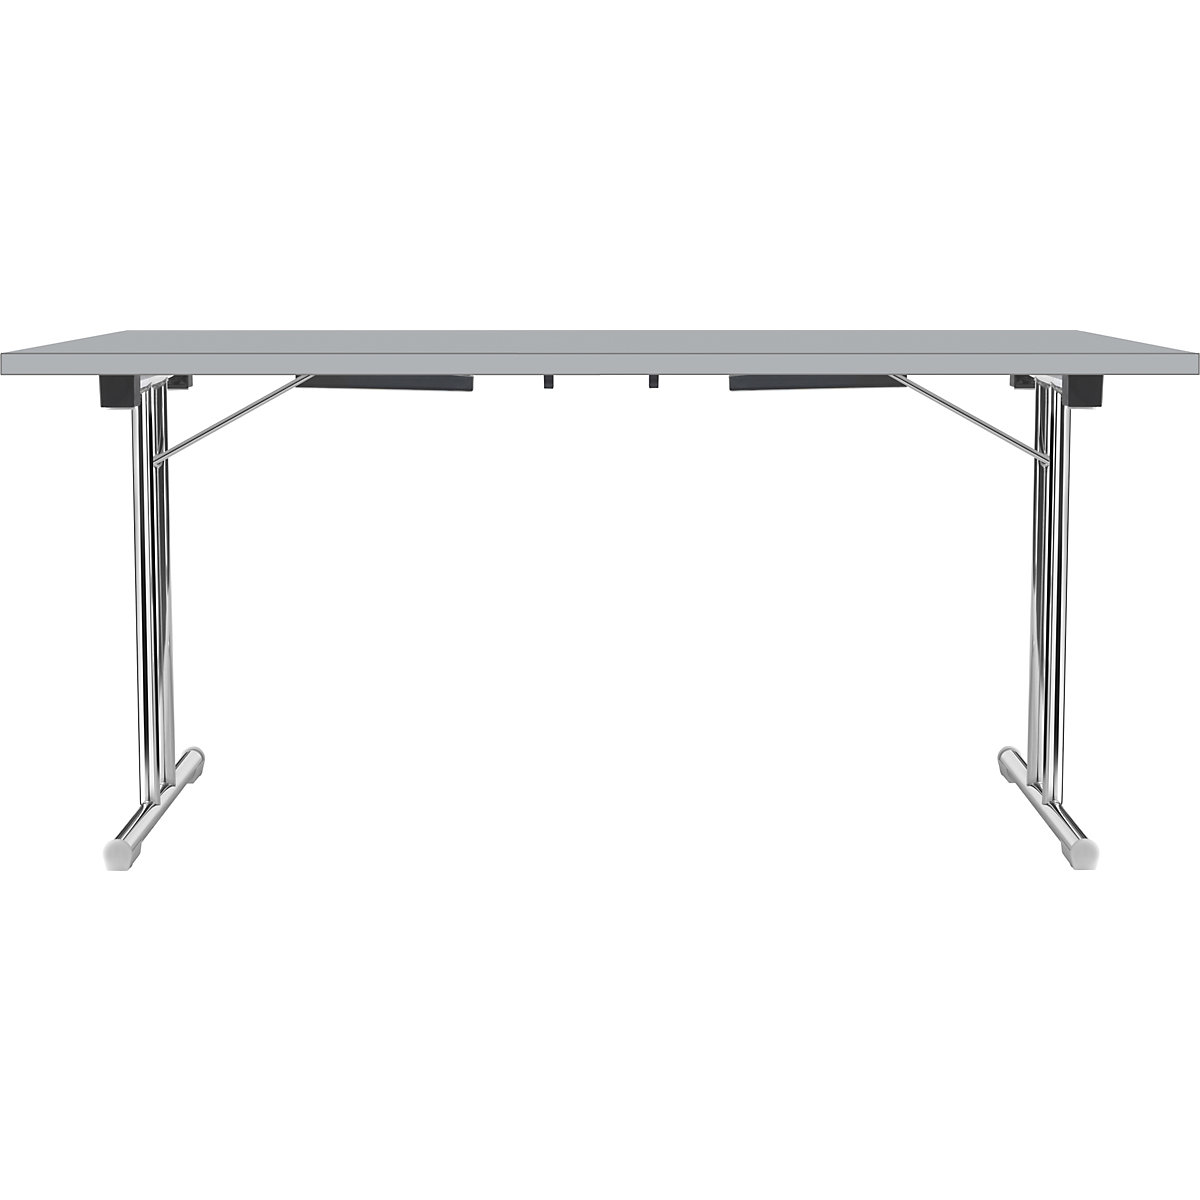 Zložljiva miza z dvojnim podnožjem v obliki črke T, ogrodje iz okrogle jeklene cevi, kromirano, svetlo siva/svetlo siva, ŠxG 1400 x 700 mm-9